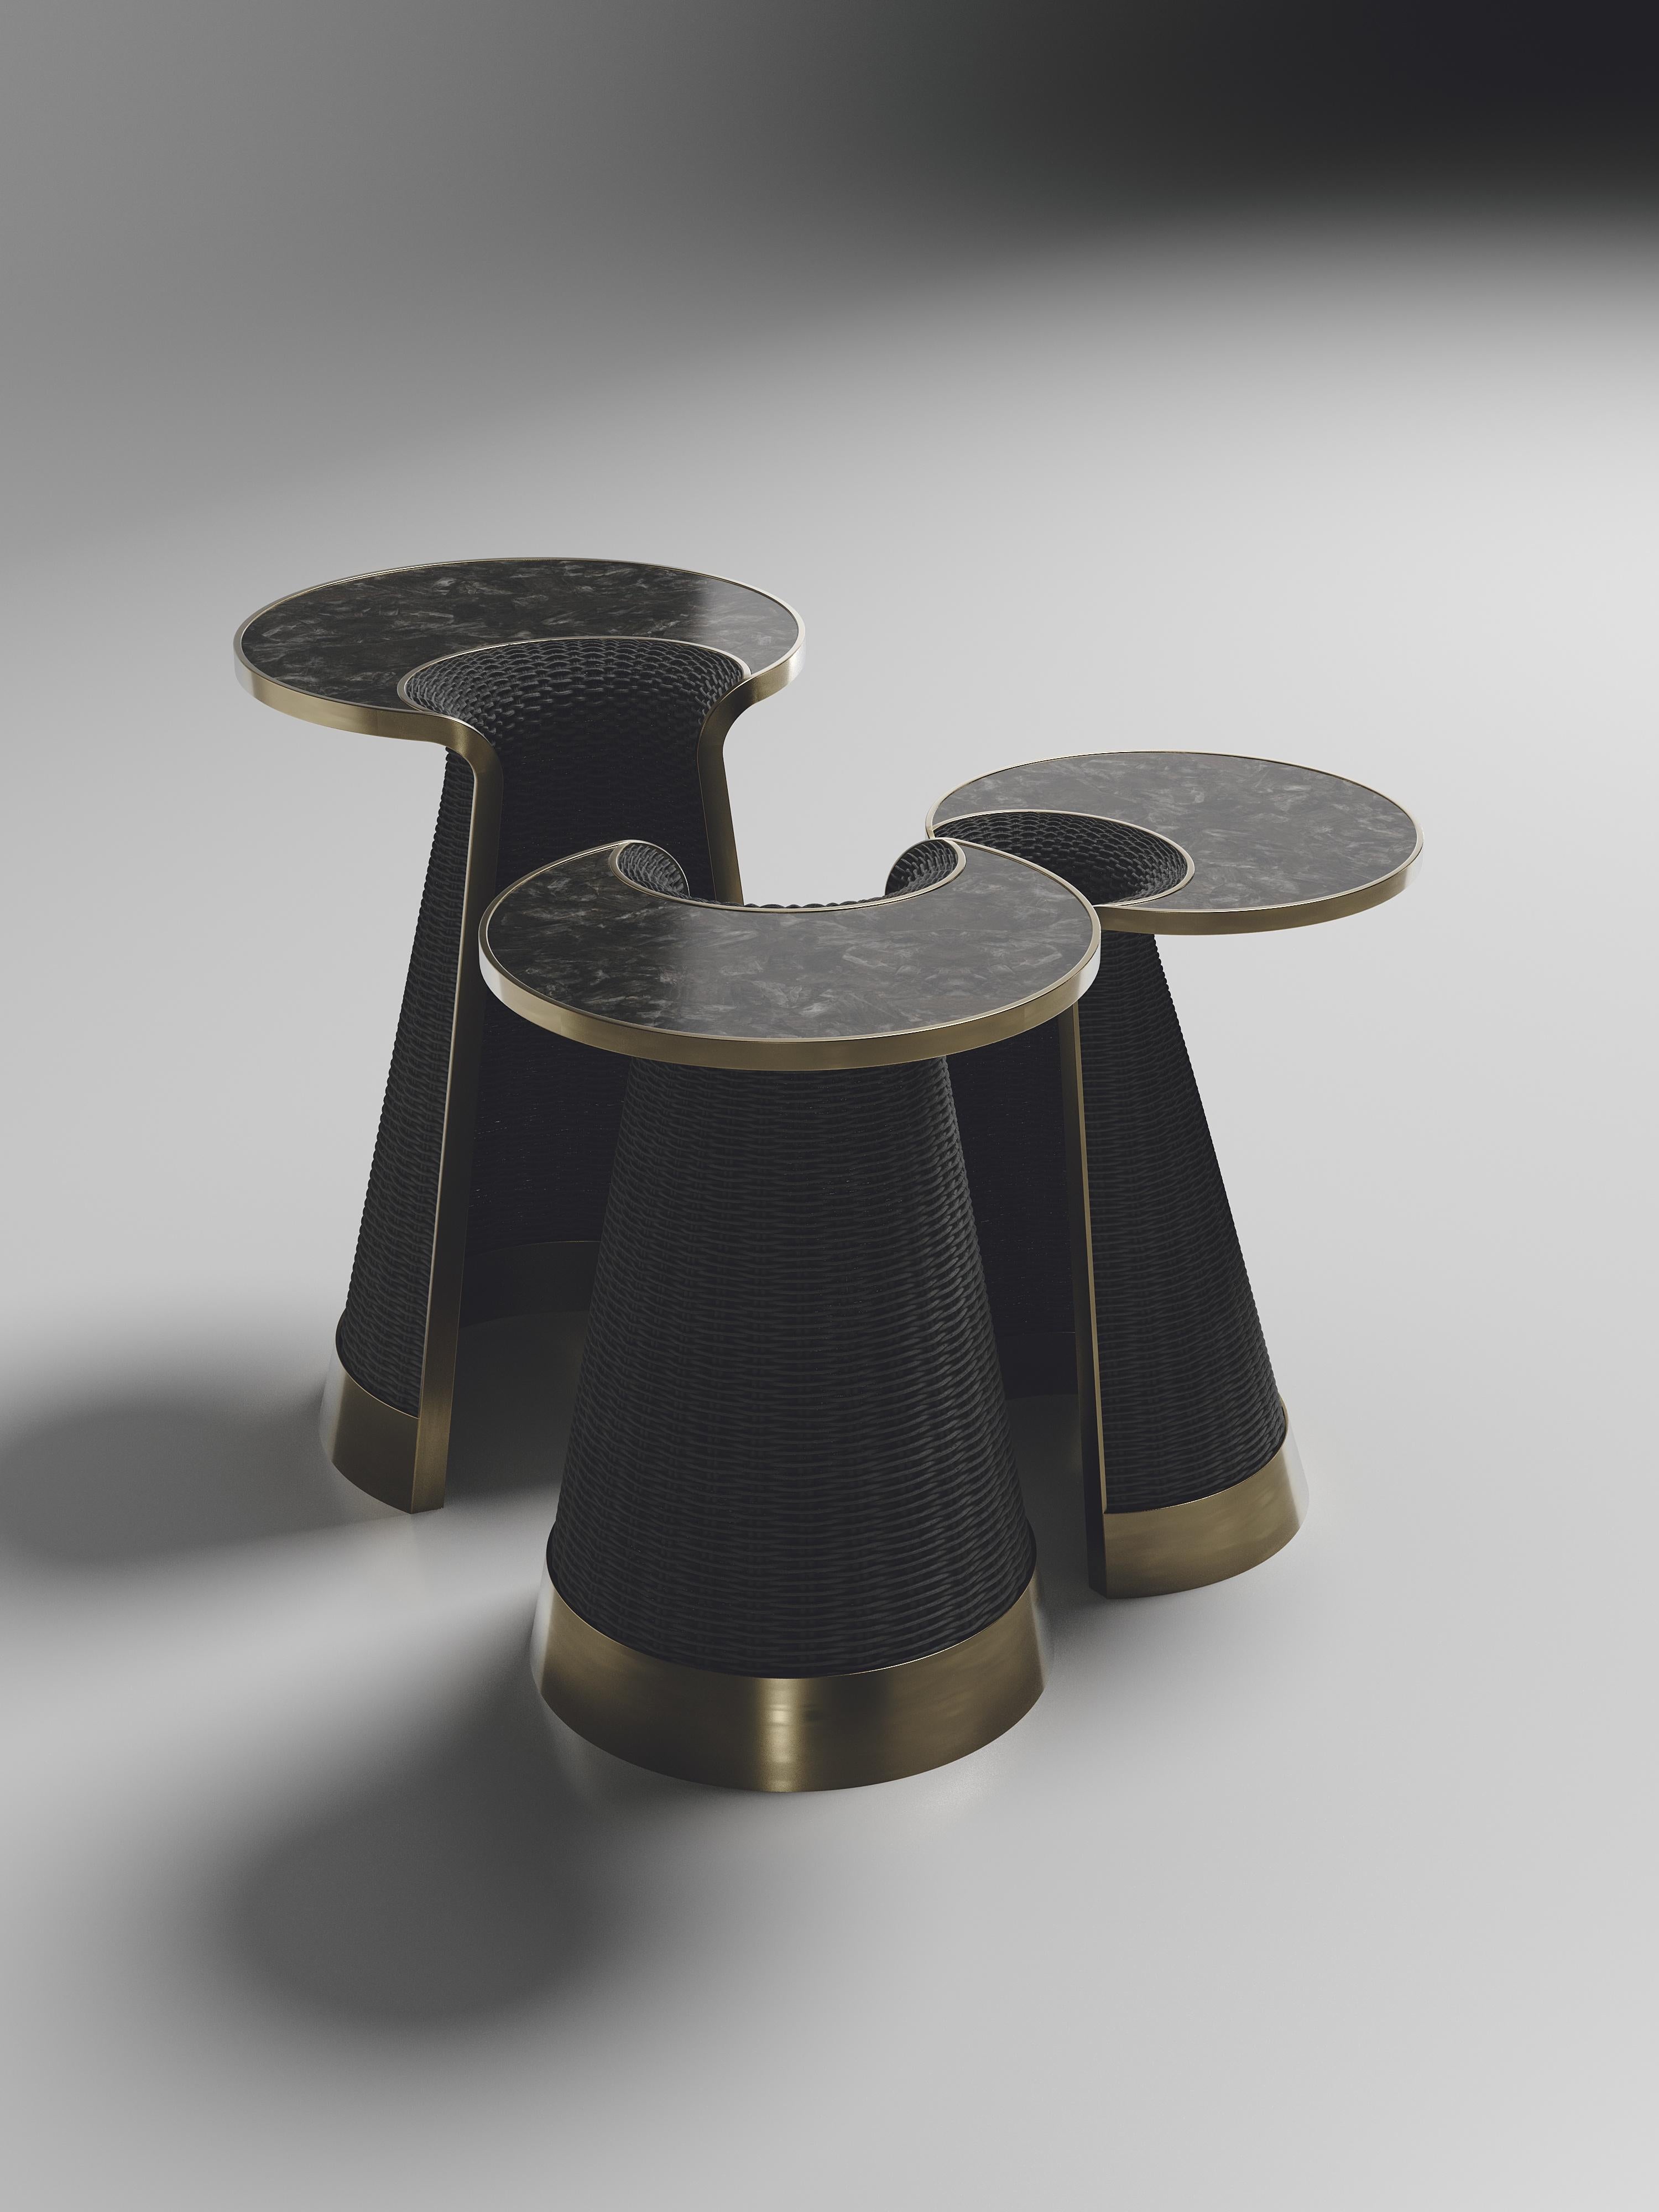 L'ensemble de 3 tables d'appoint gigognes Nymphea de R&Y Augousti fait partie de leur collection de tables d'appoint.  lancement d'une nouvelle capsule de rotin. Les pièces explorent l'ADN emblématique de la marque, qui consiste à transformer